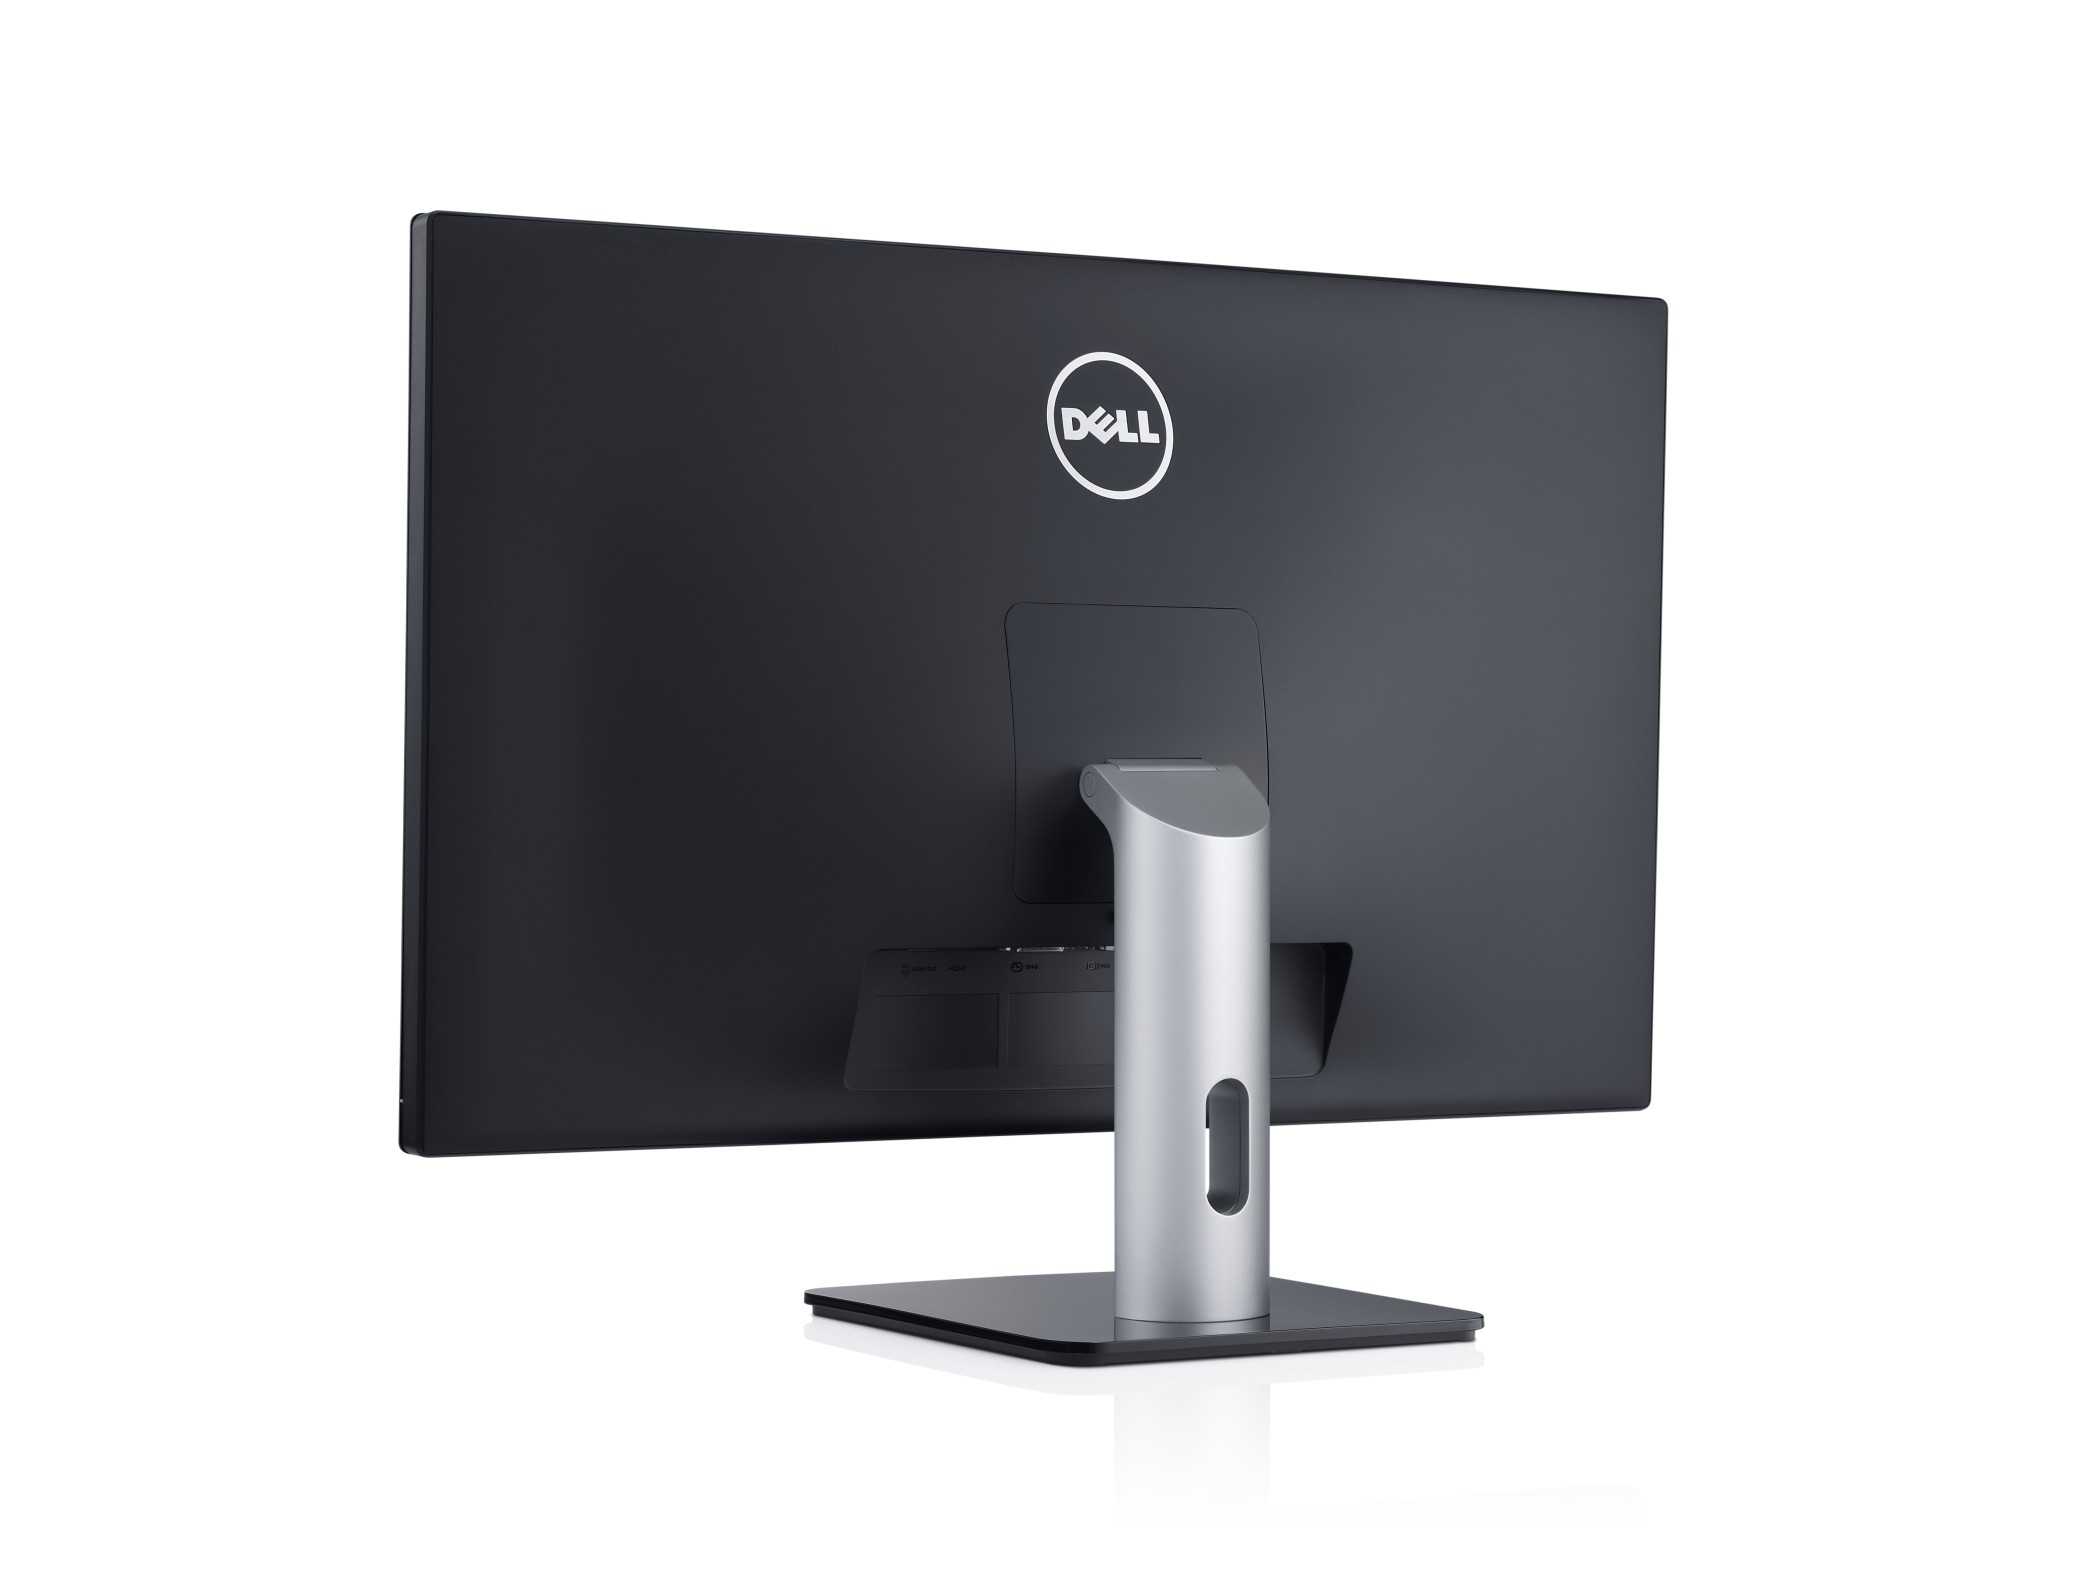 Dell s2740l (серебристо-черный) - купить , скидки, цена, отзывы, обзор, характеристики - мониторы